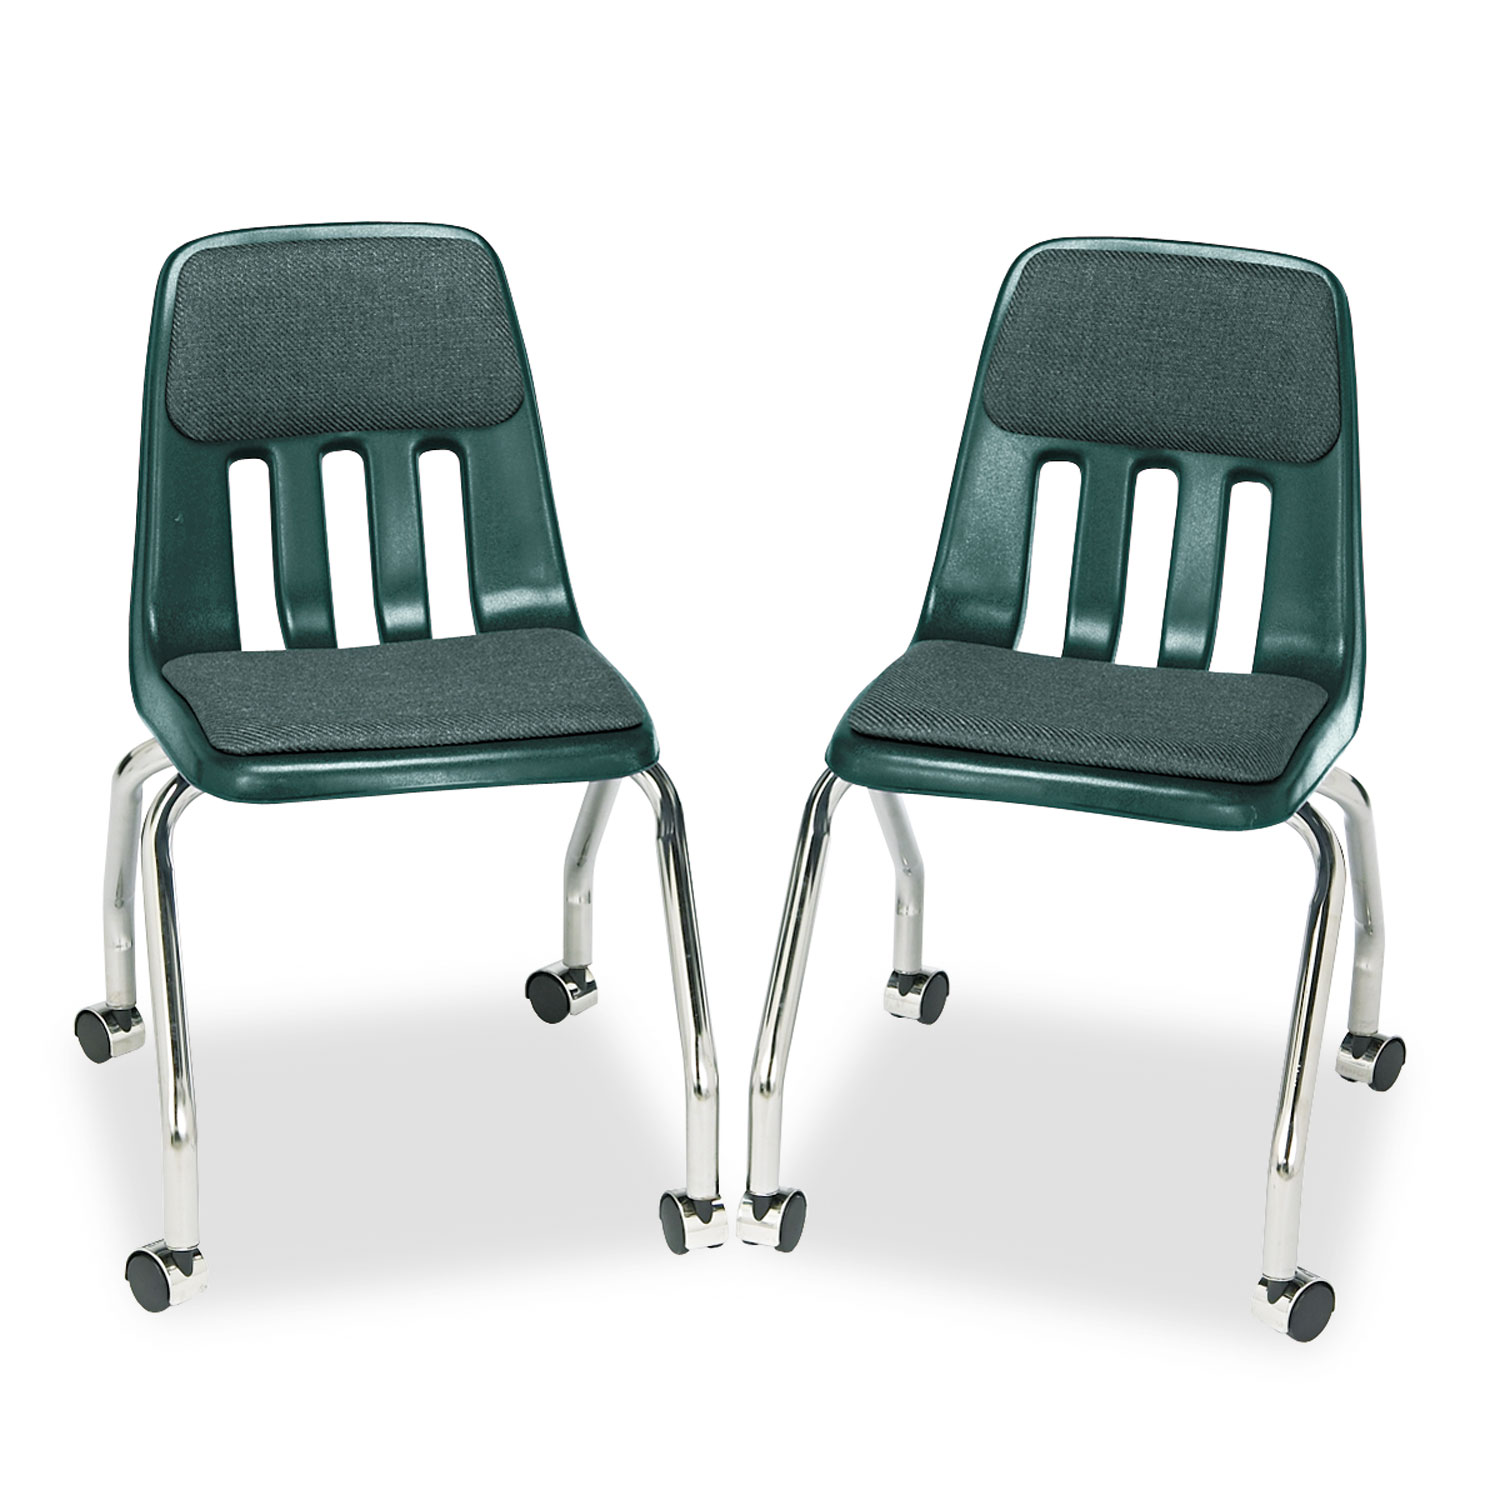 Padded Teachers Chair, 18-5/8 x 21 x 30, Forest Green, 2/Carton